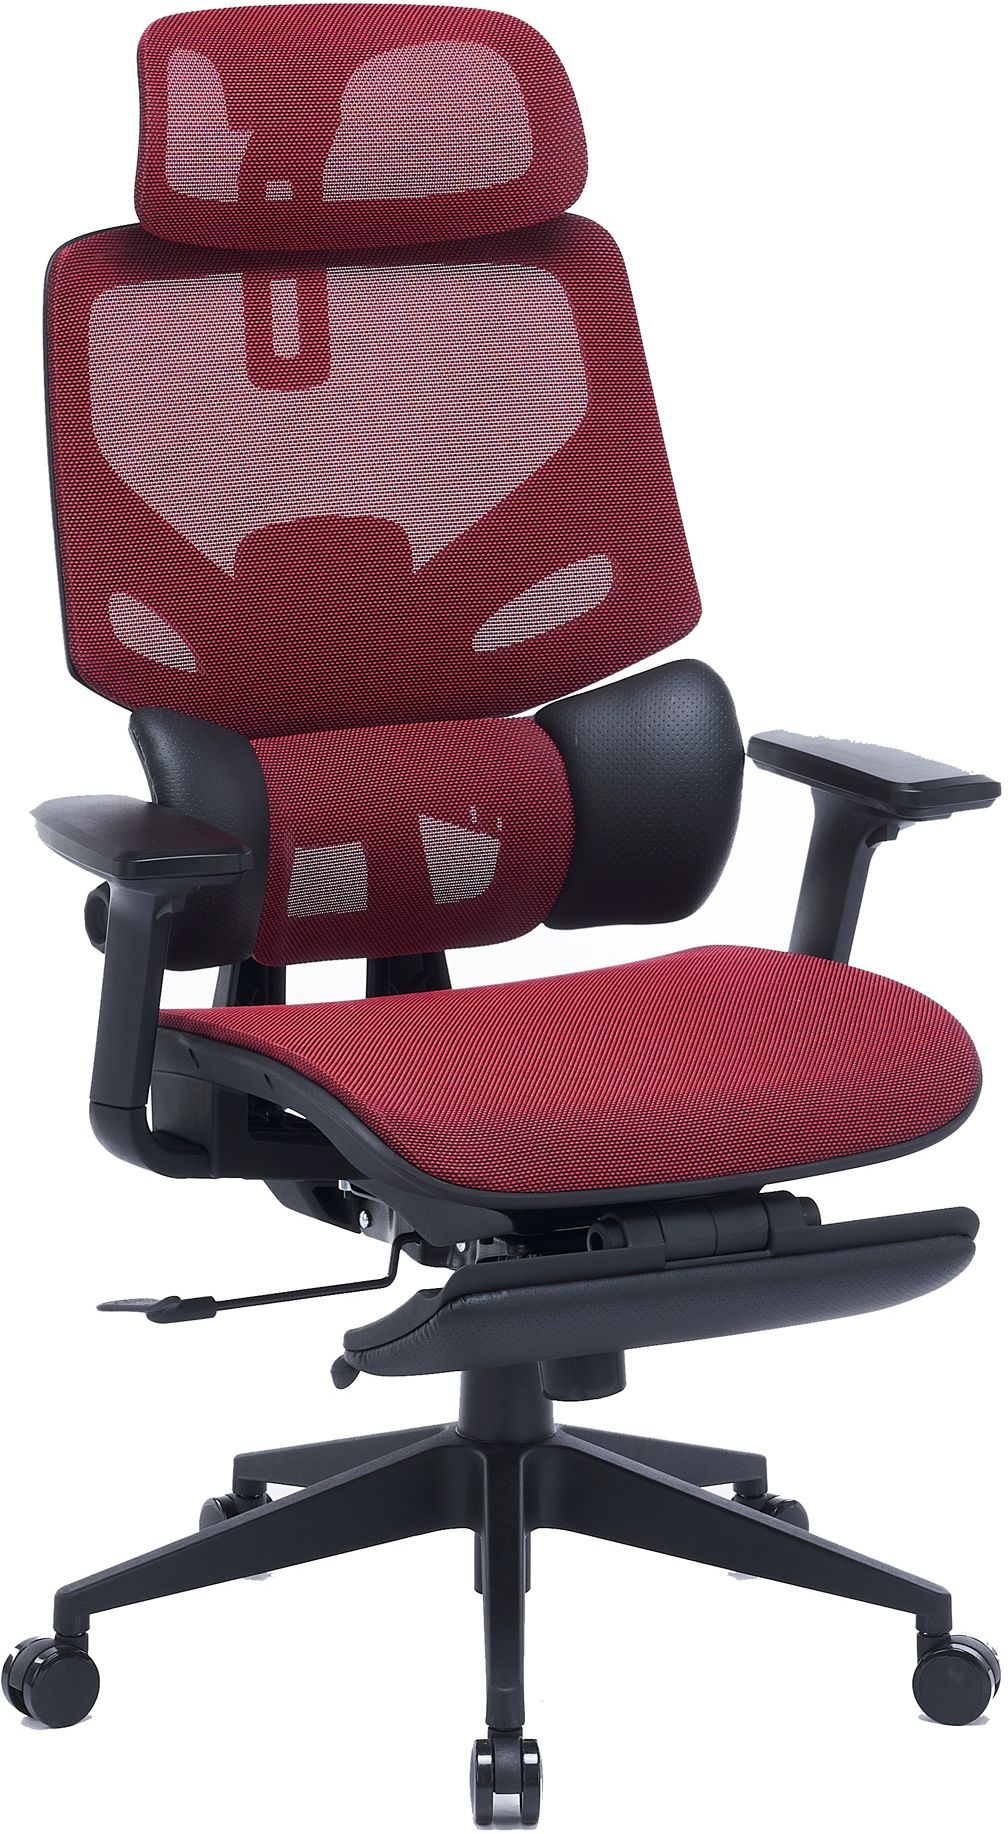 Кресло Cactus CS-CHR-MC01-RD красный сет./эко.кожа с подголов. крестов. пластик подст.для ног 